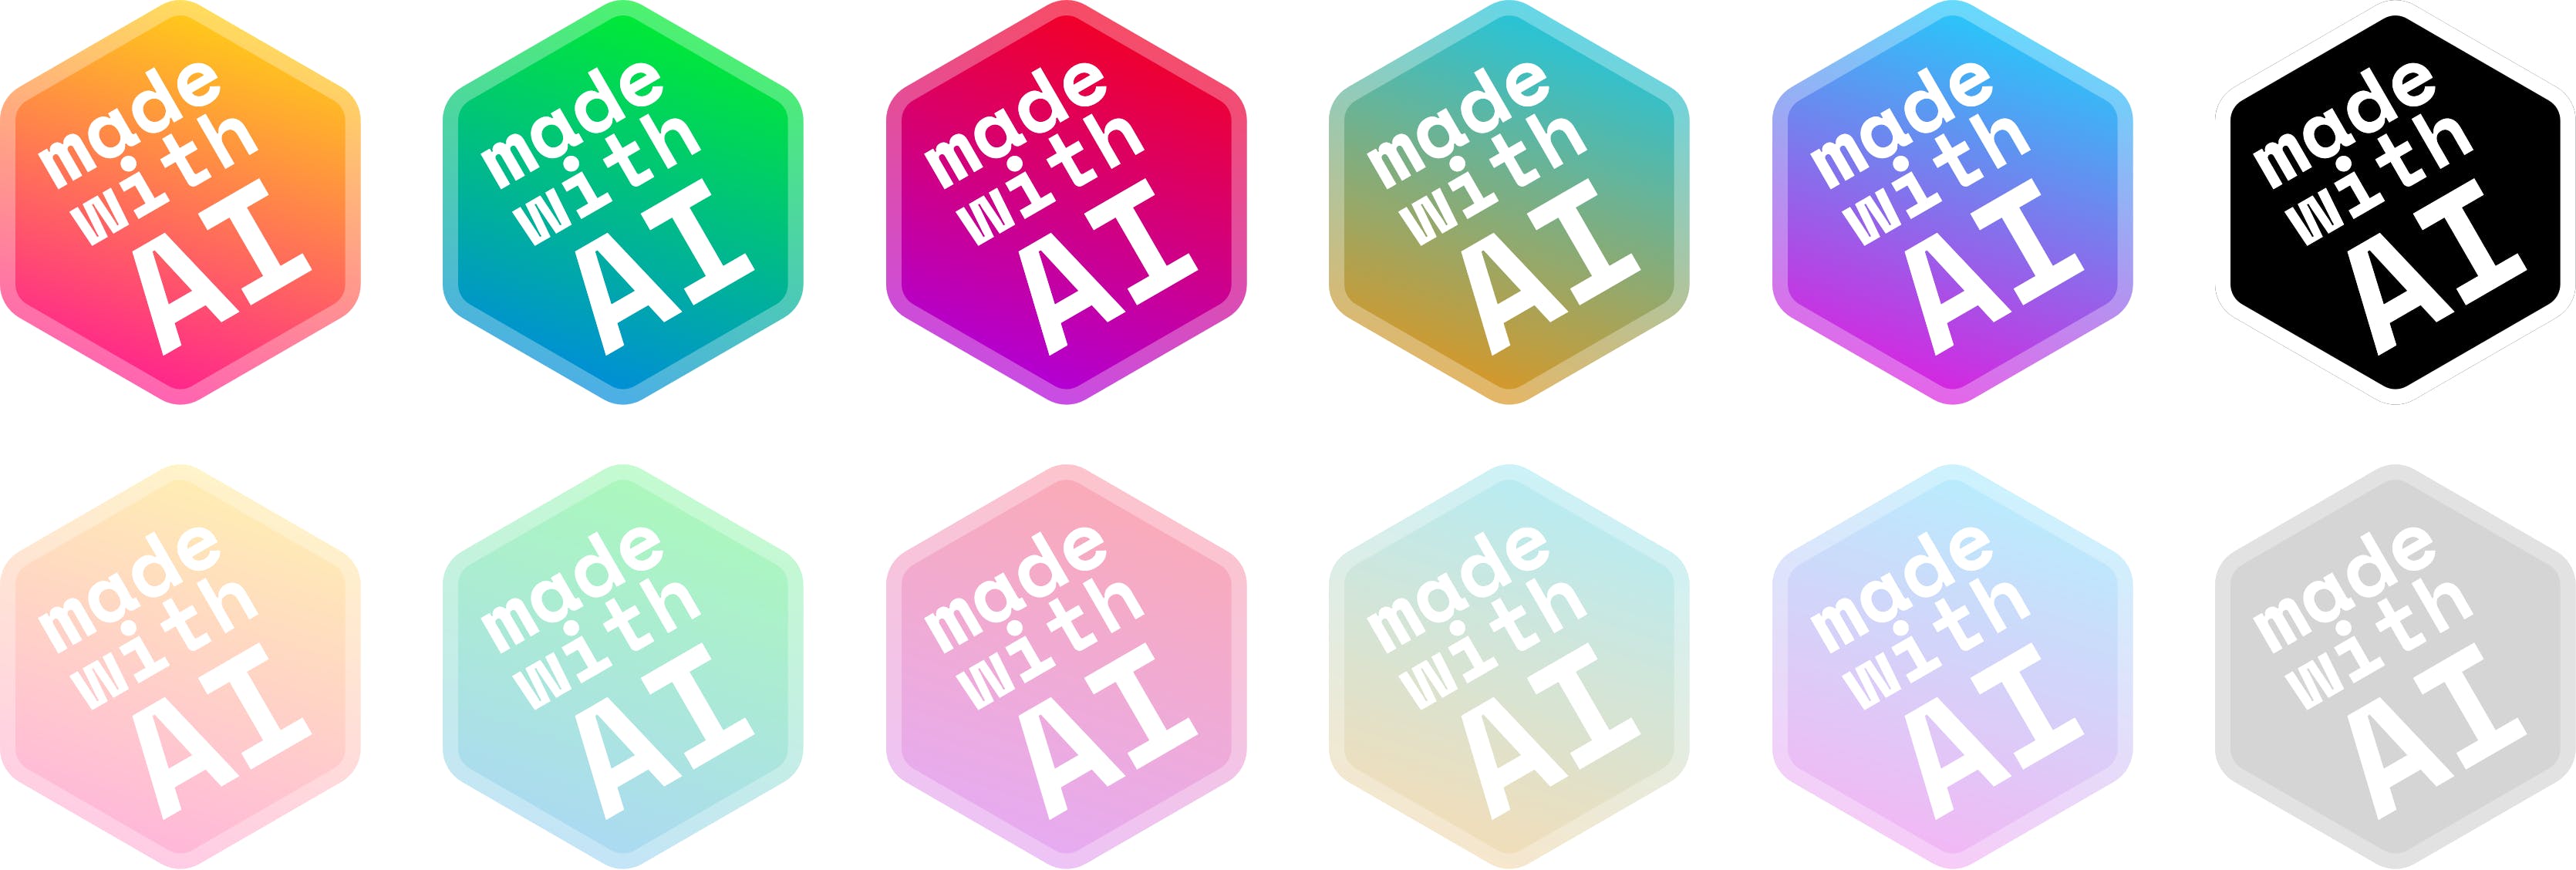 AI Badge media 1